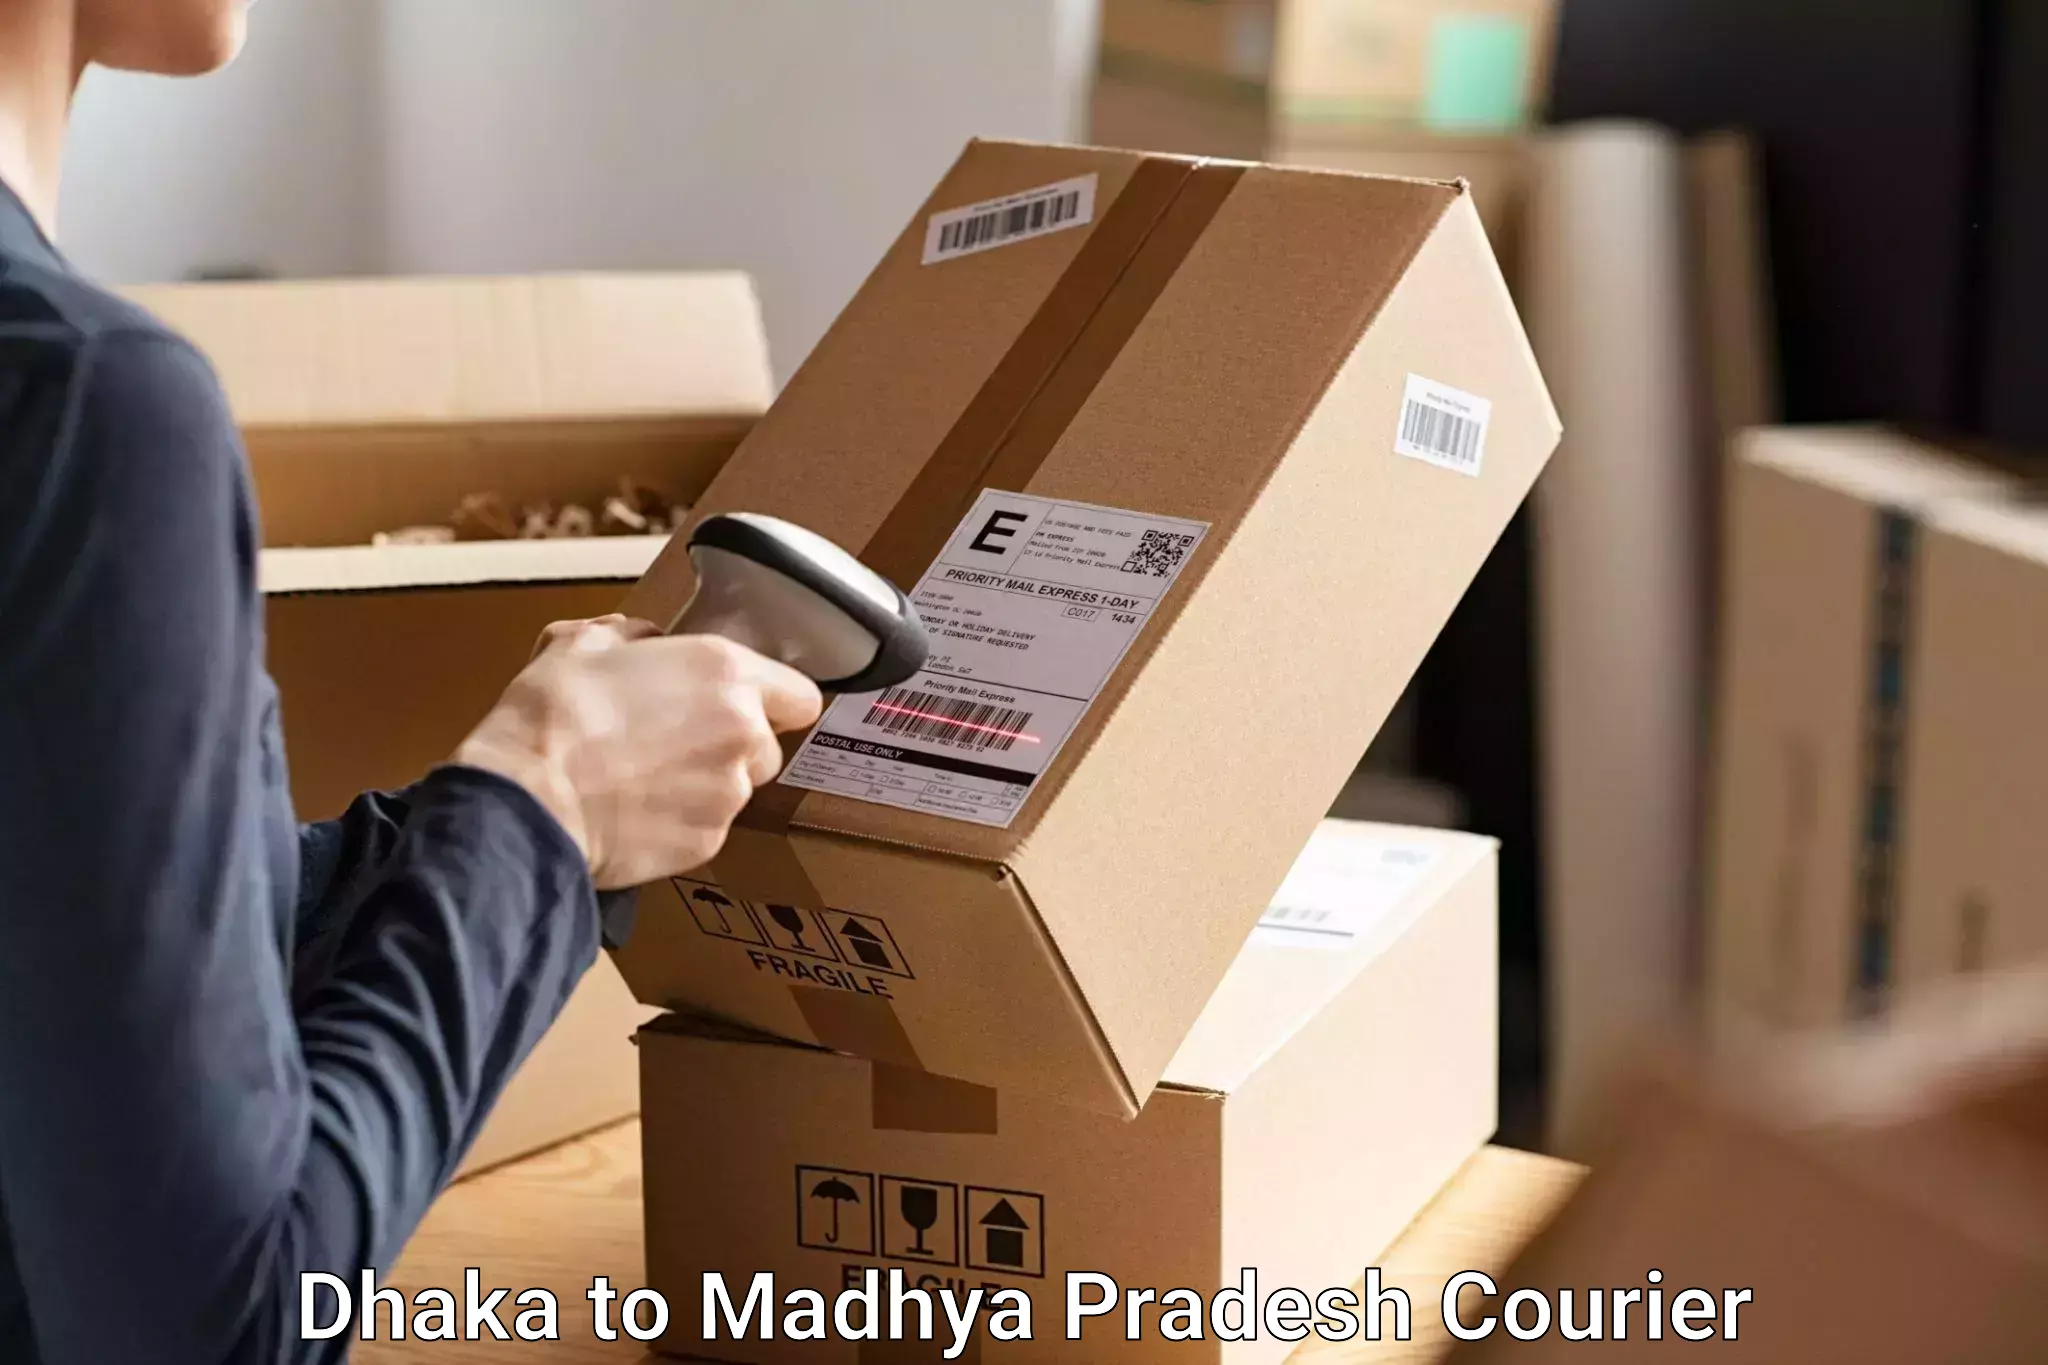 Digital baggage courier Dhaka to Nainpur